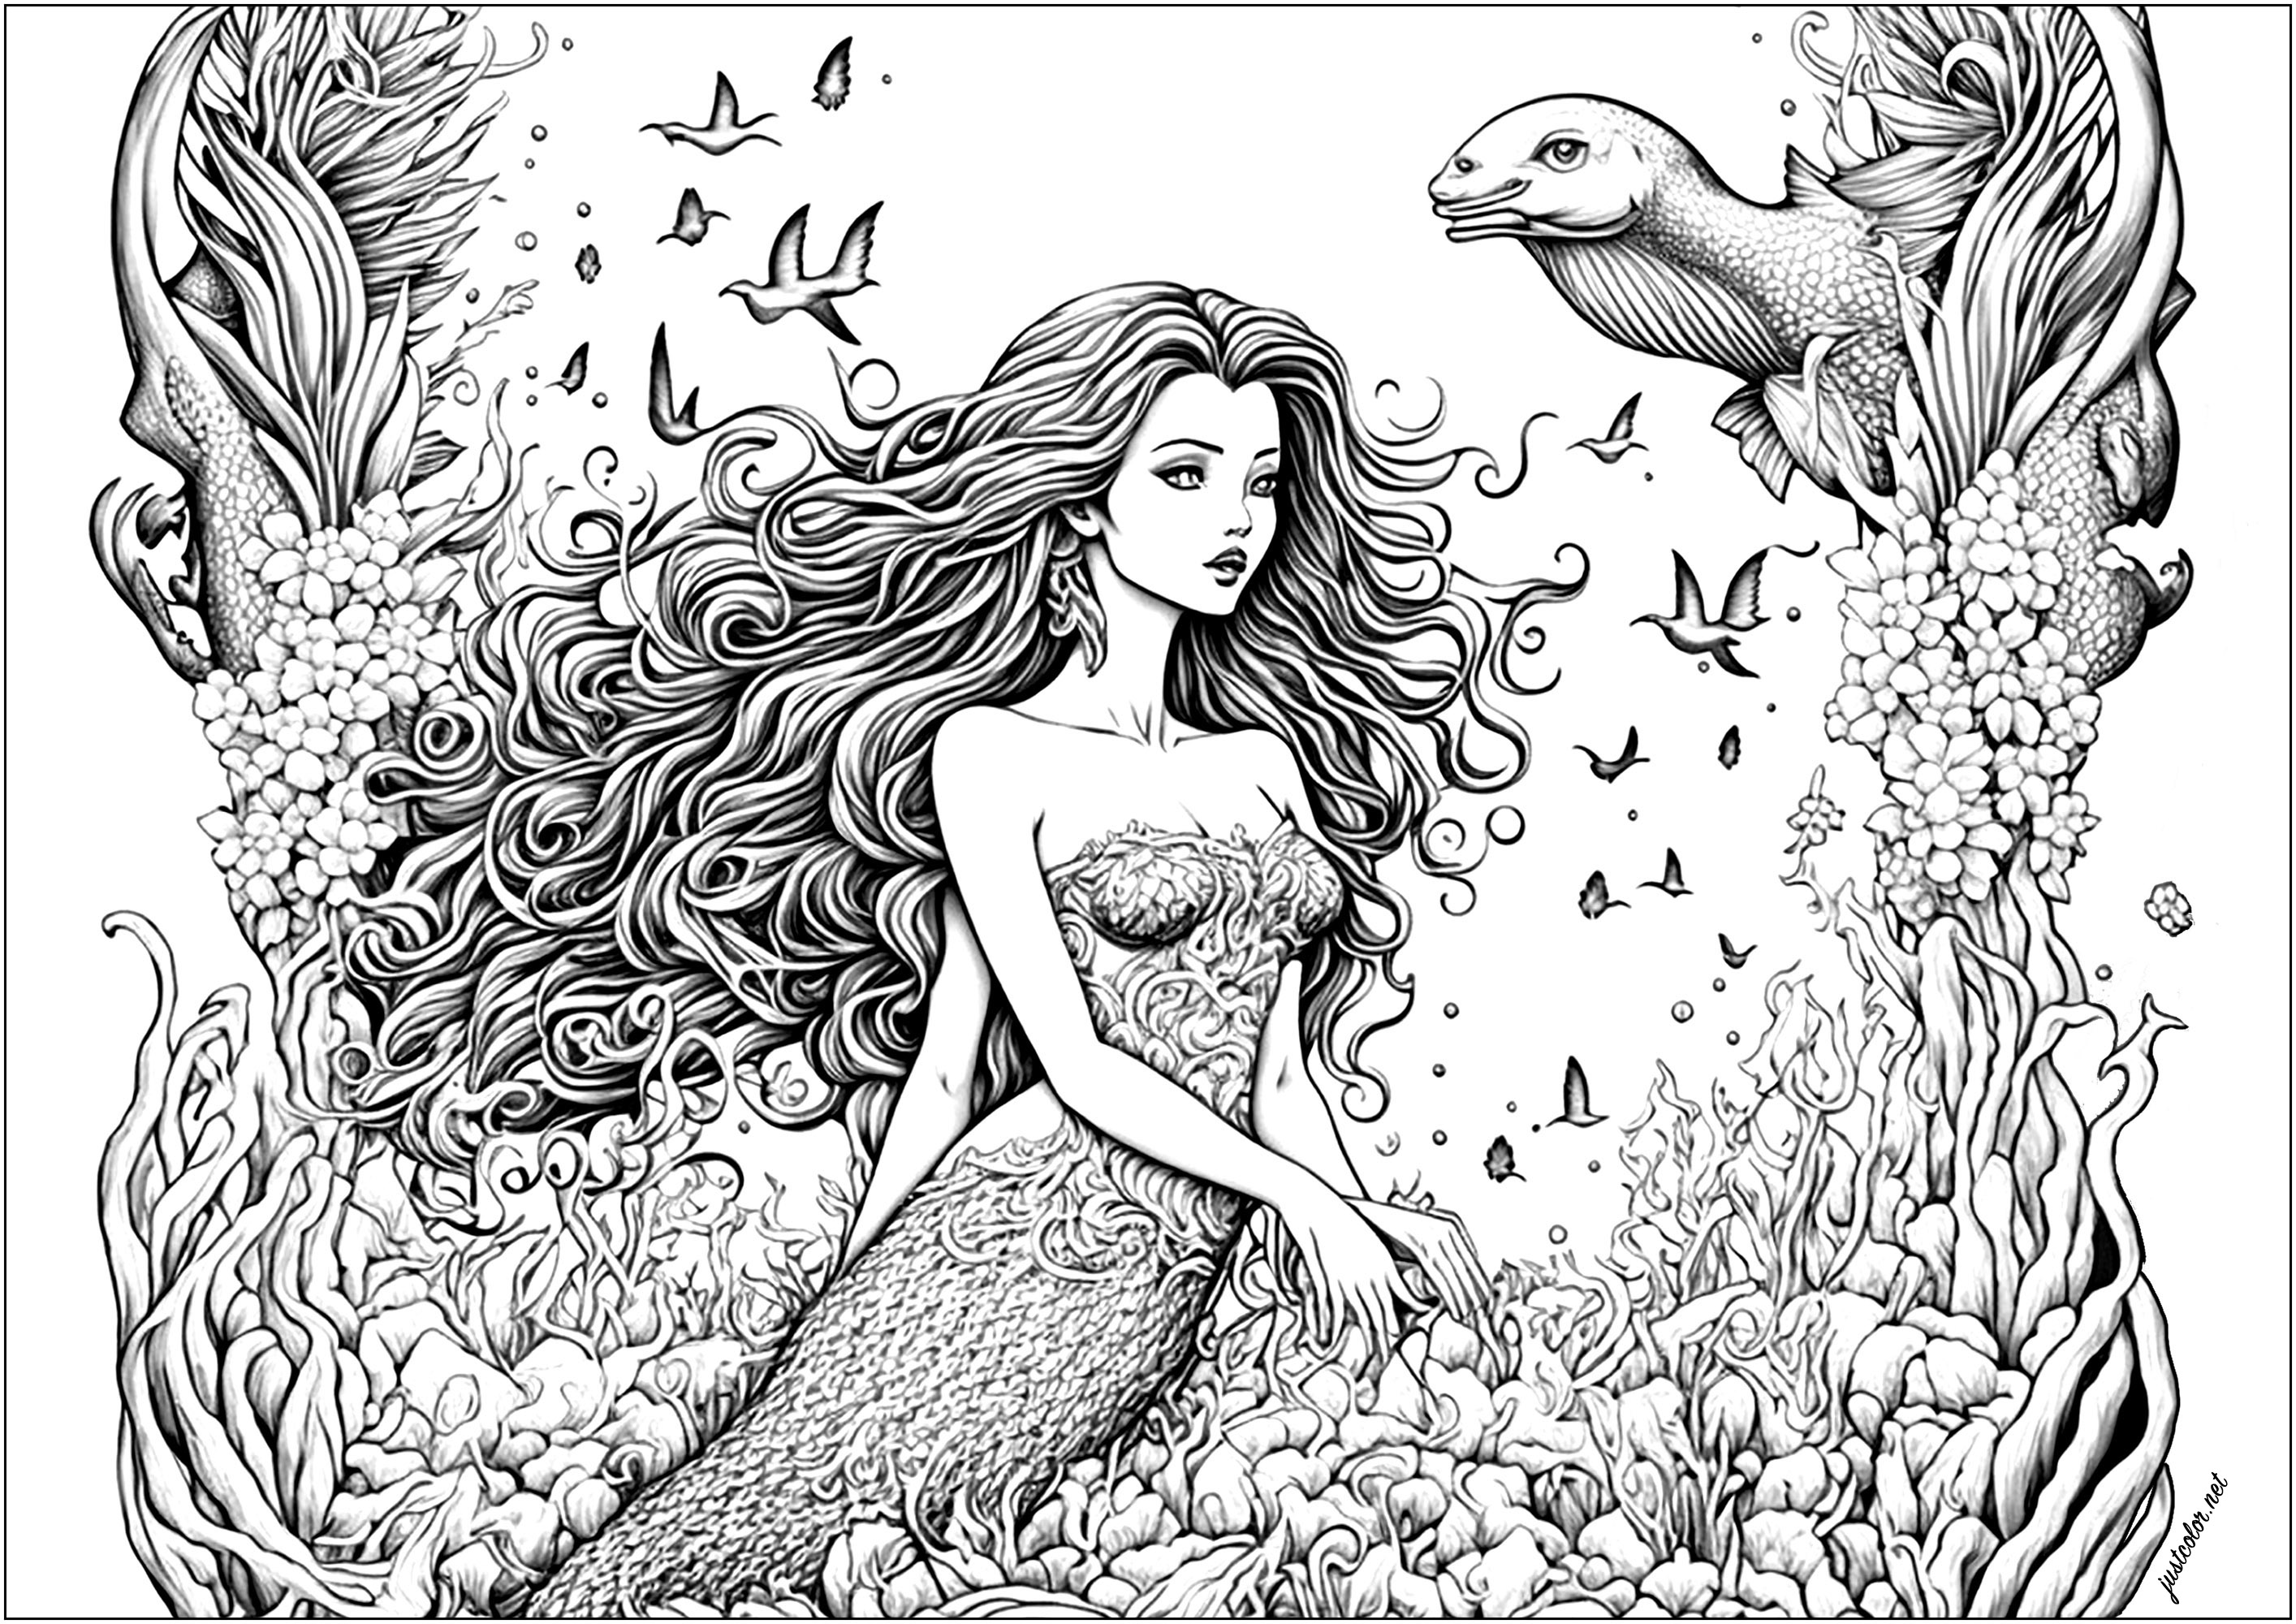 Uma sereia sentada sobre corais no oceano, rodeada de peixes. Nadam à sua volta, brincando, com as suas escamas vibrantes a brilhar à luz do sol, enquanto ela sorri e estende a mão para lhes acariciar a cabeça.